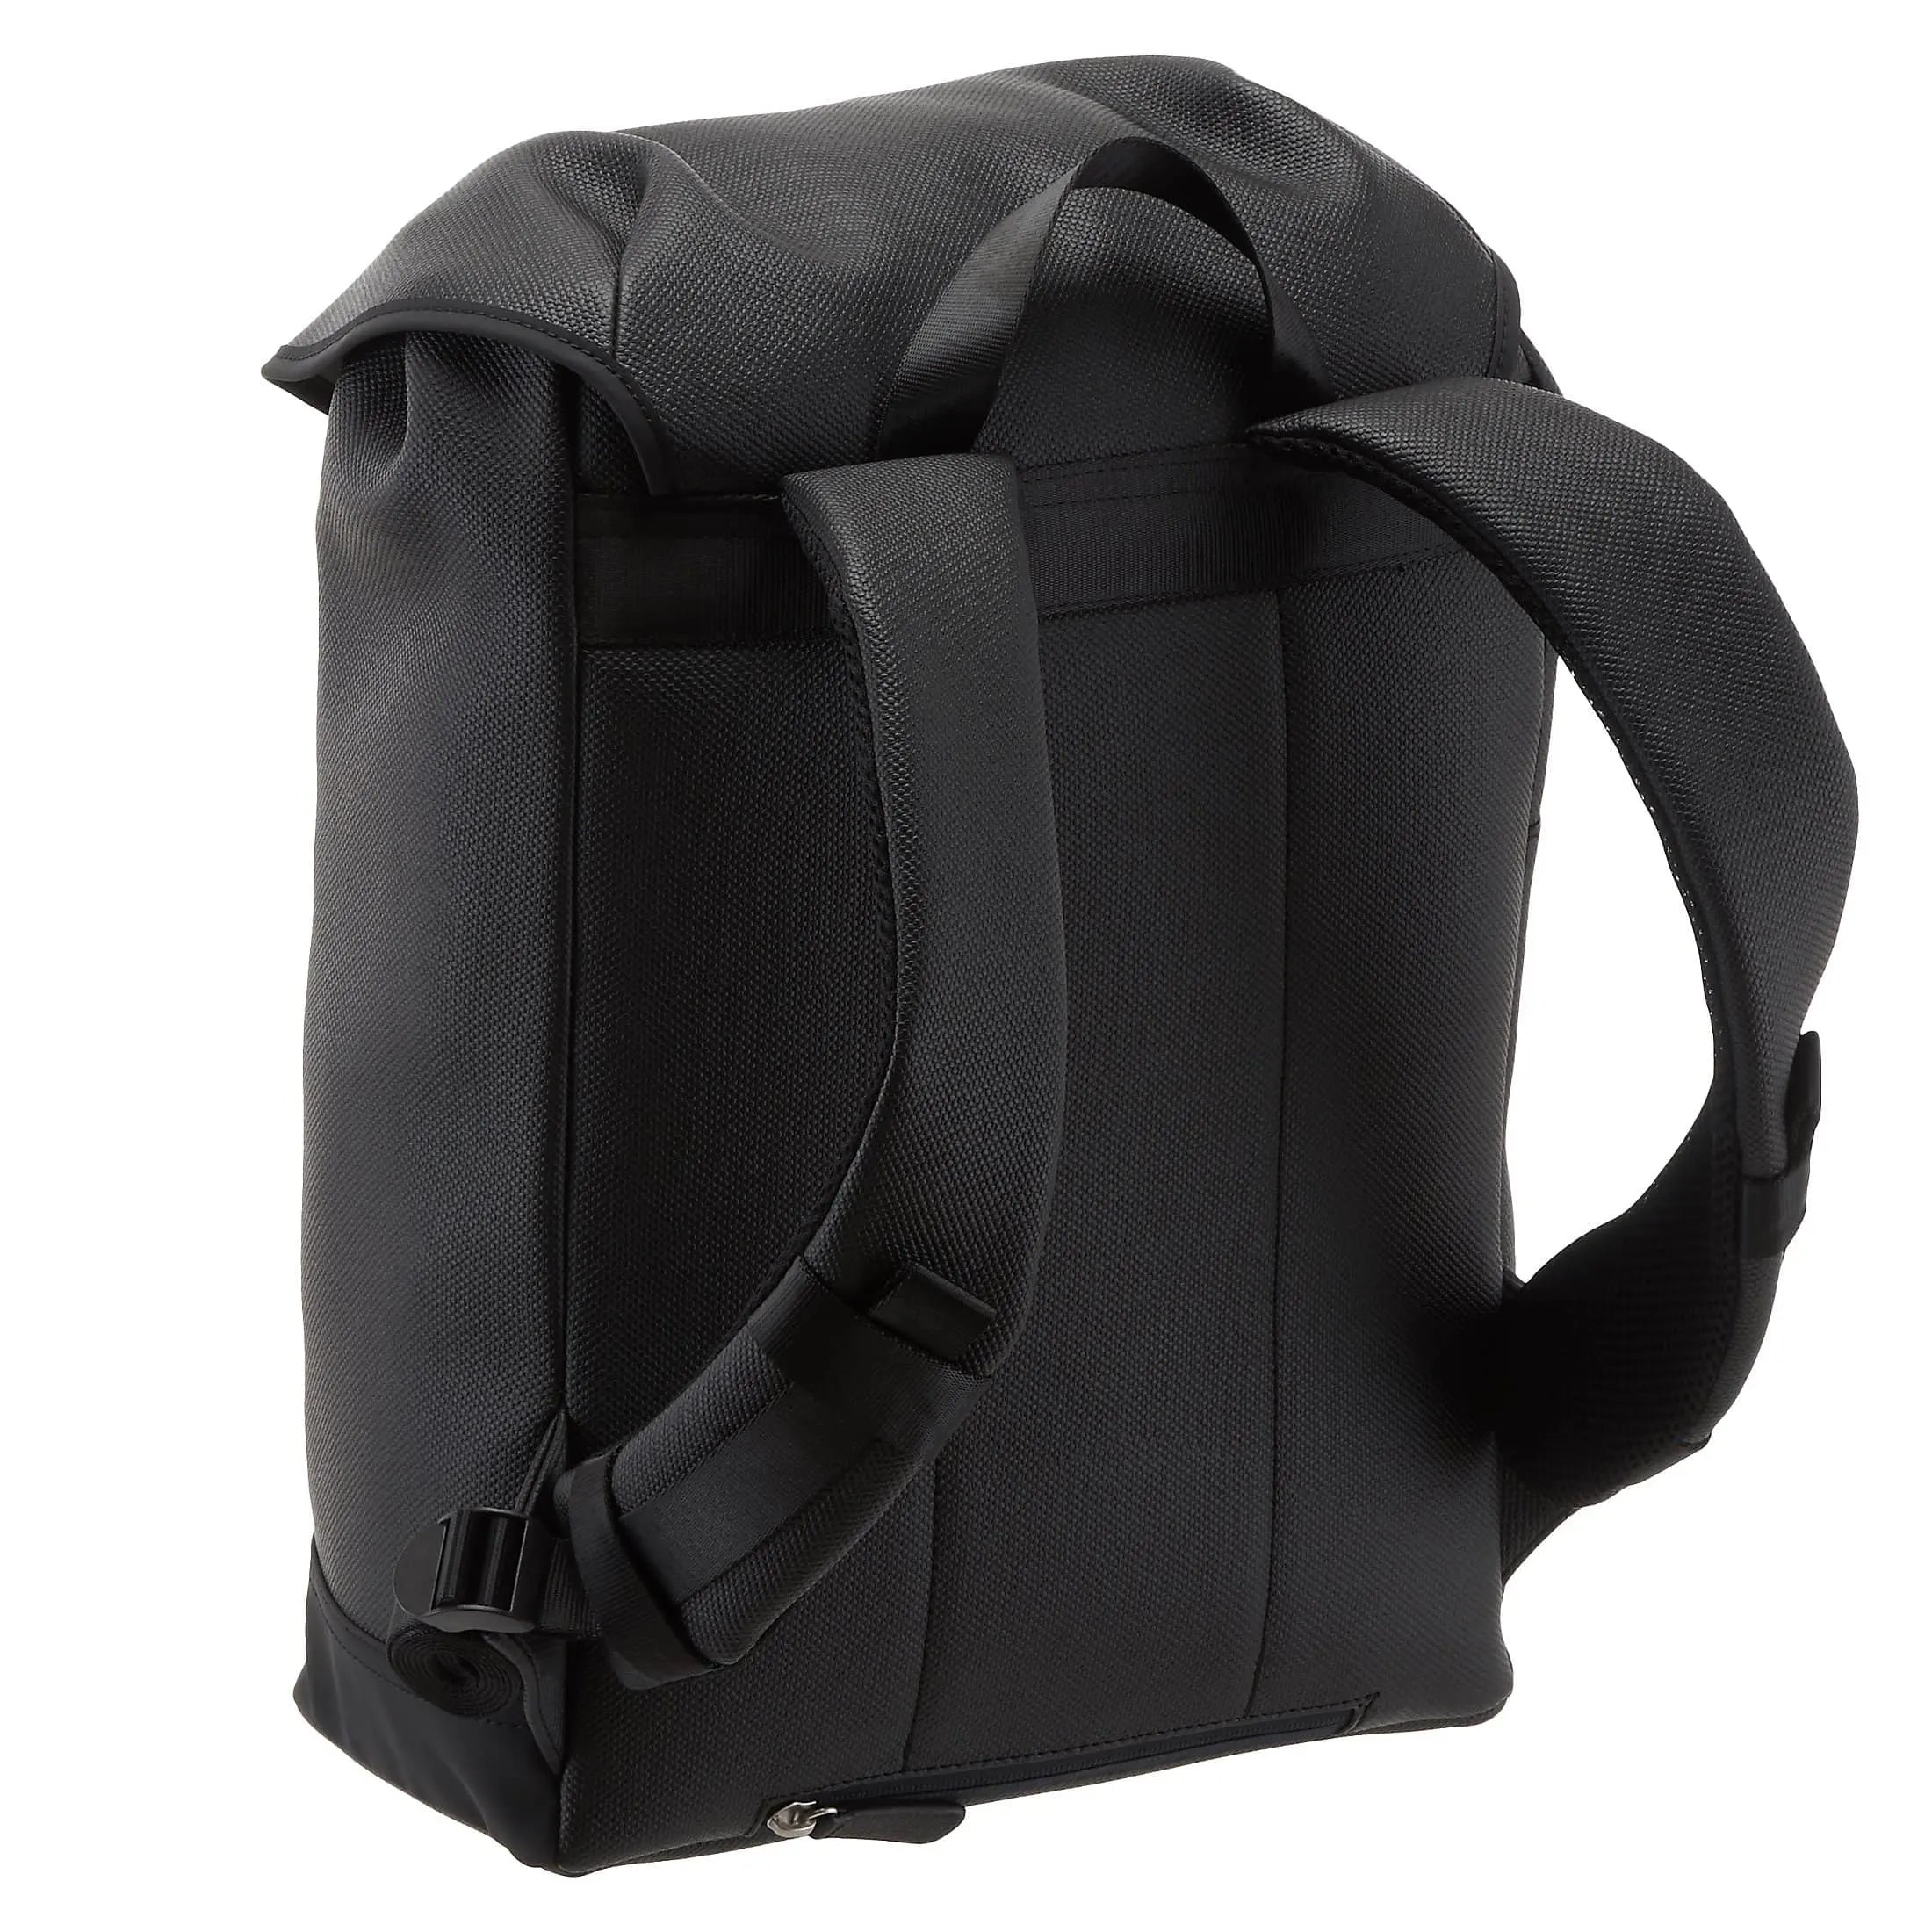 Strellson Royal Oak Backpack MVF 42 cm - black